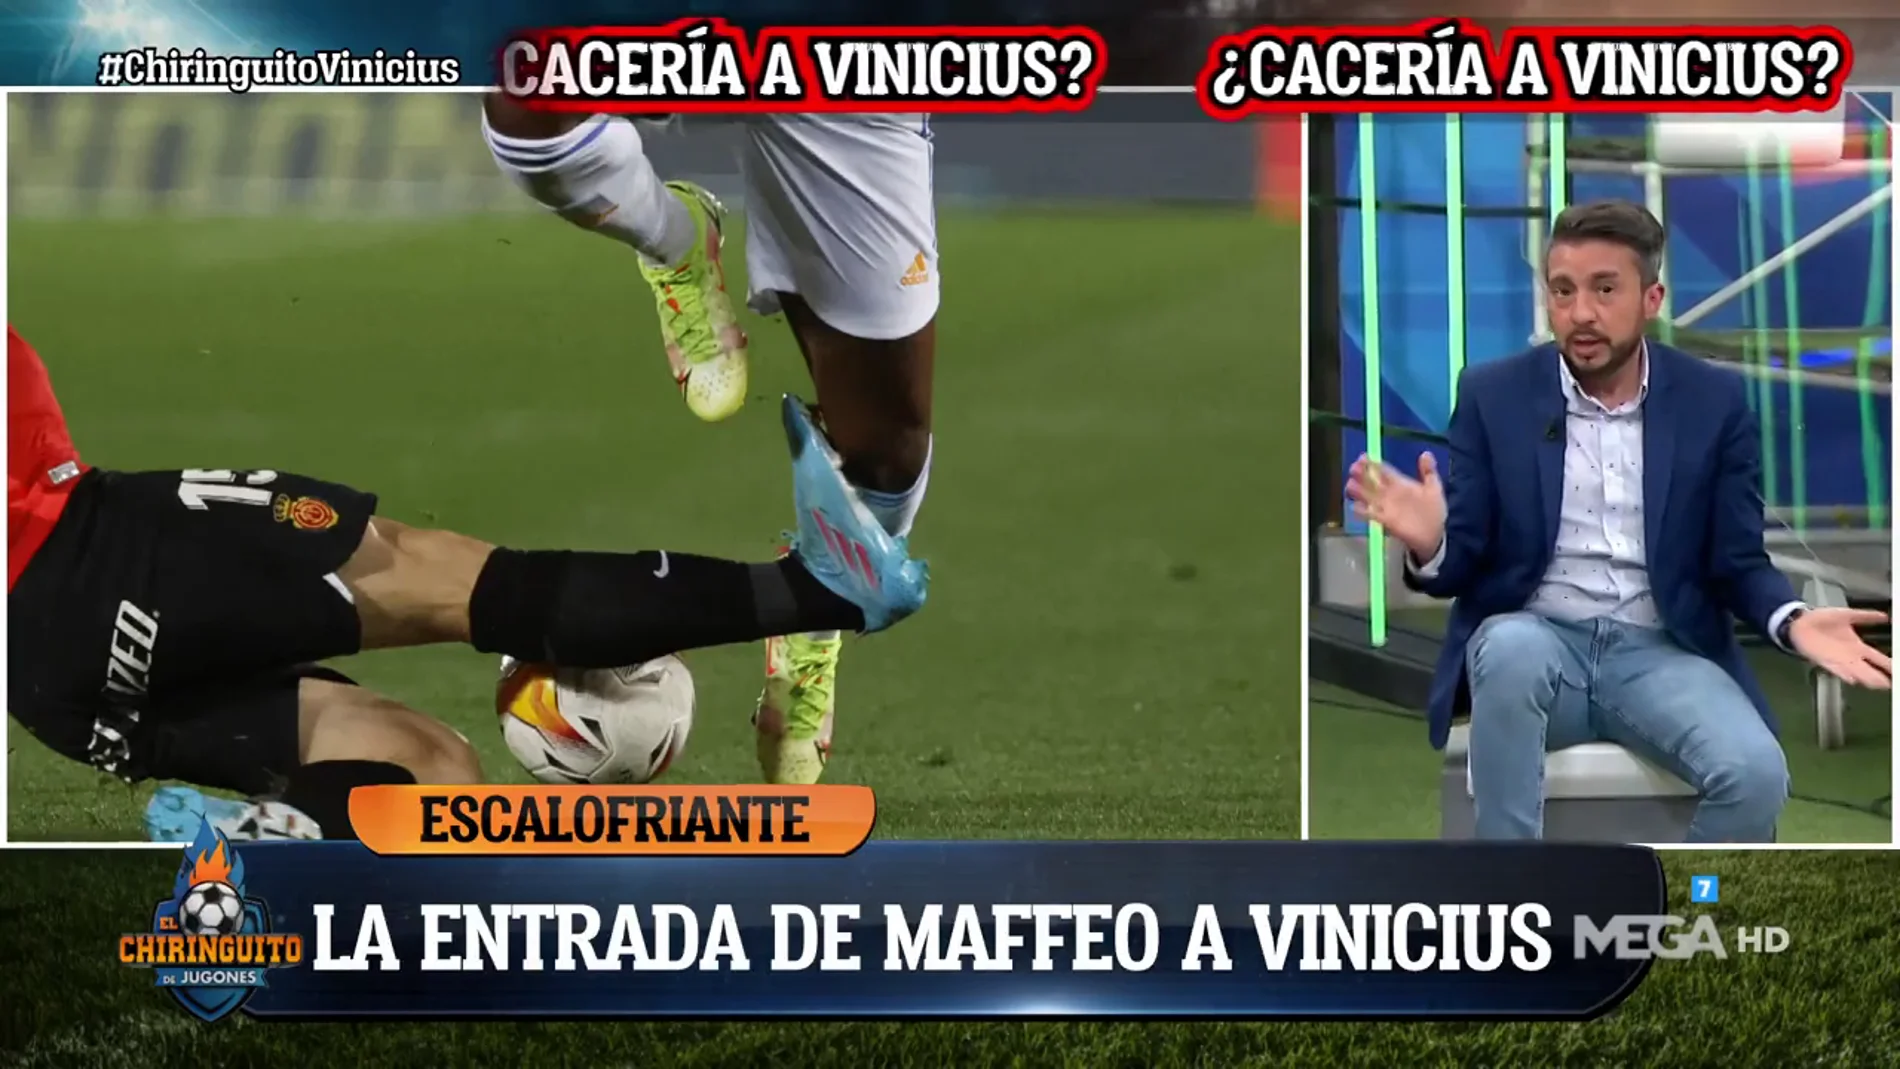 Matías Palacios: "Viendo la bota de Maffeo, estoy convencido que quería hacer daño a Vinicius" 